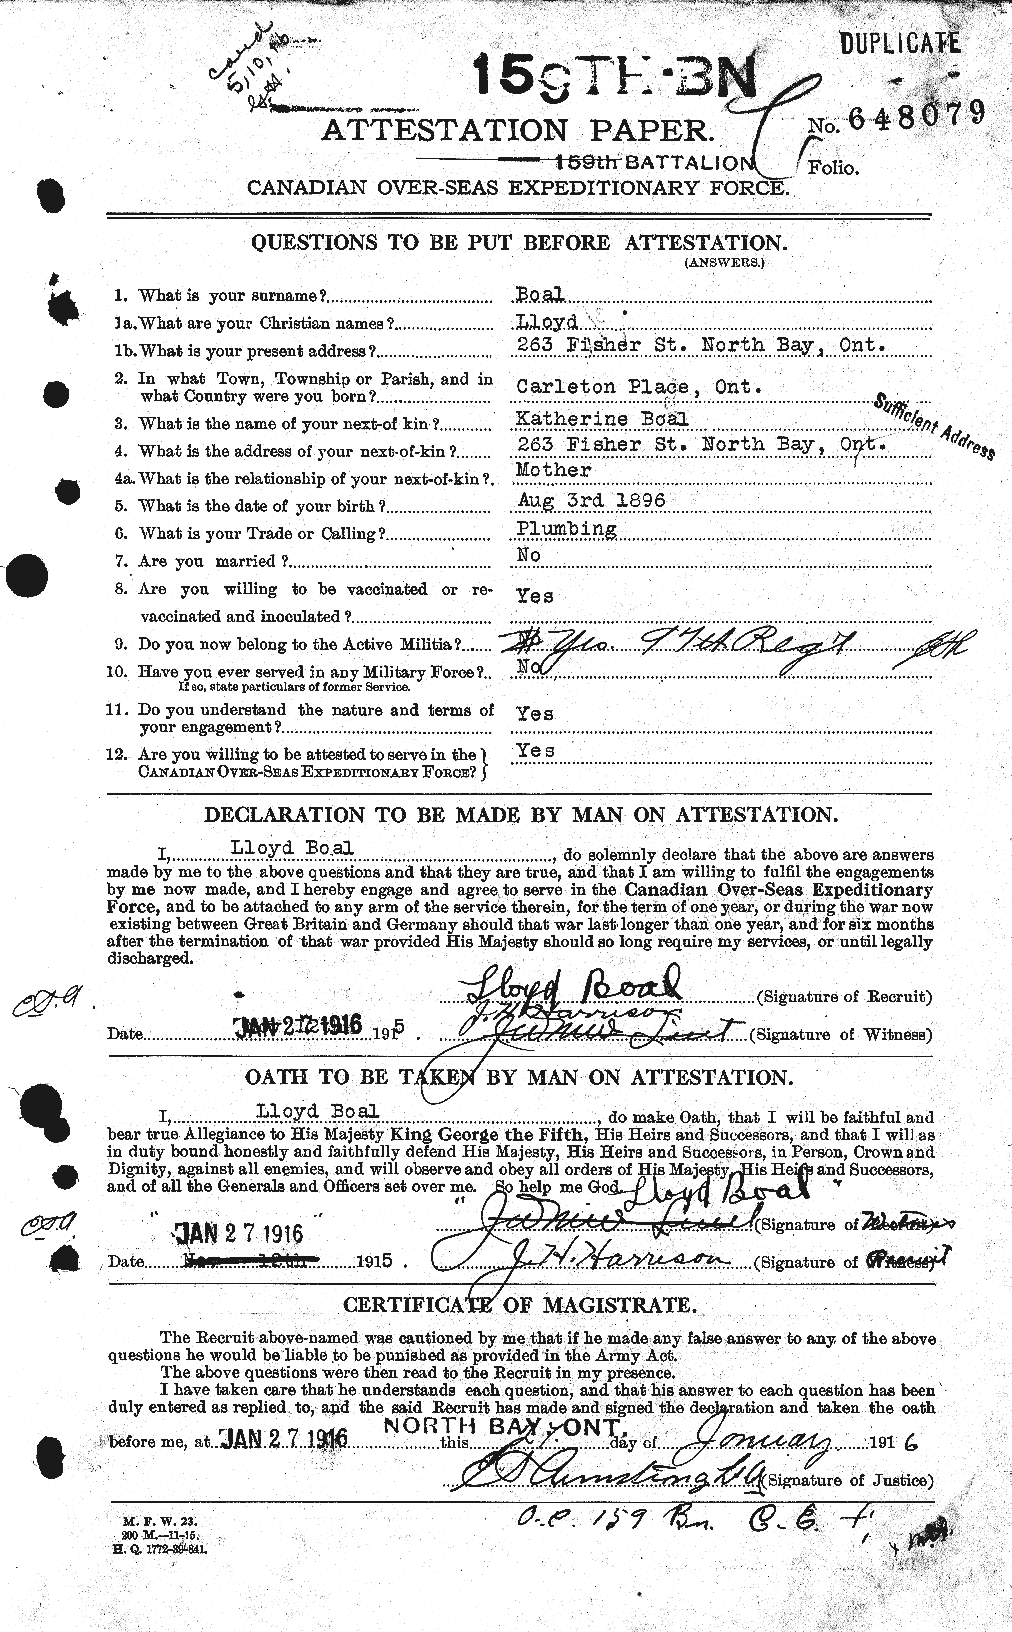 Dossiers du Personnel de la Première Guerre mondiale - CEC 247303a